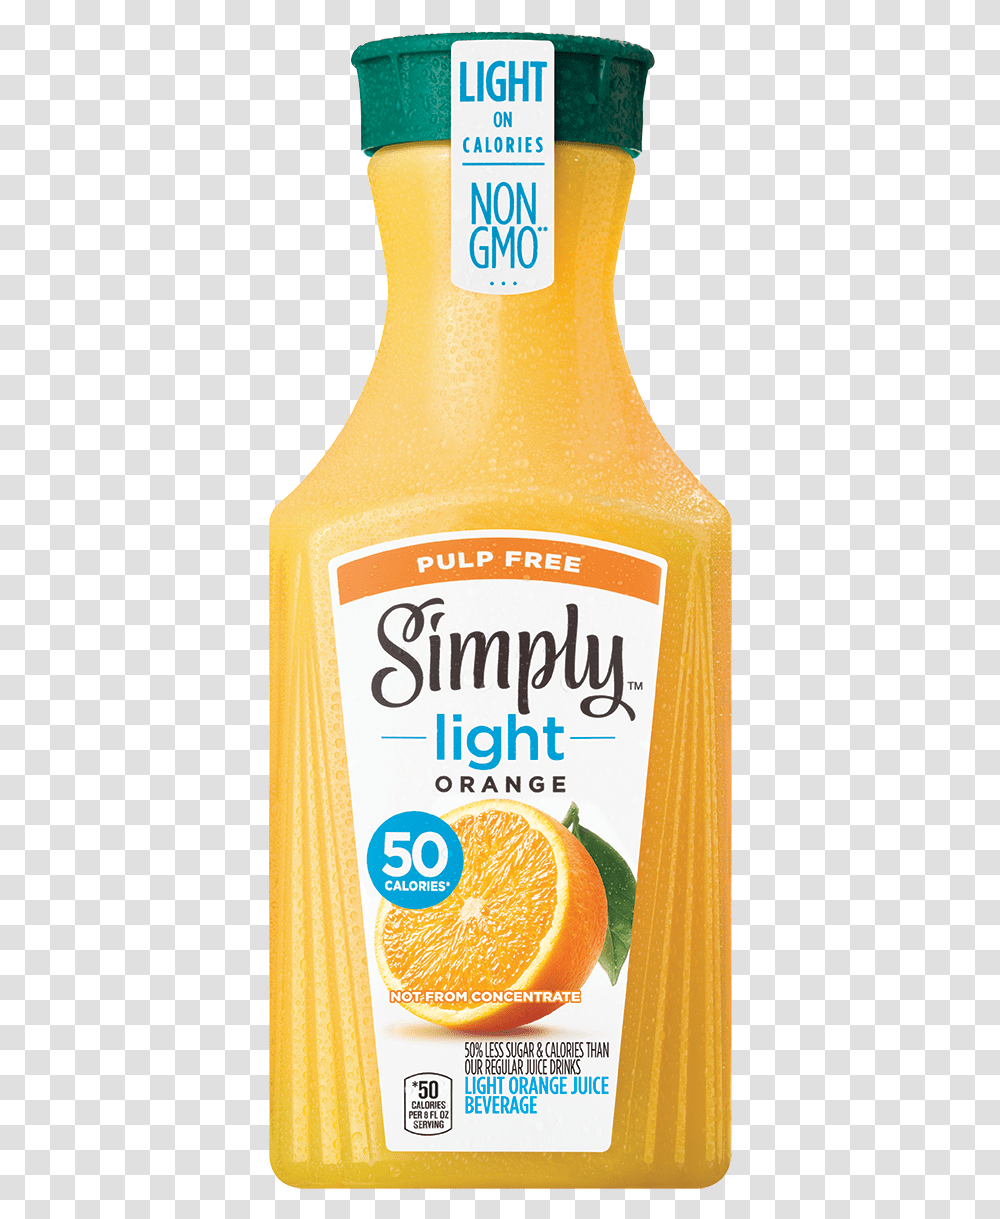 Simply Light Orange Juice Pulp Free Bottle, Beverage, Drink, Beer, Alcohol Transparent Png